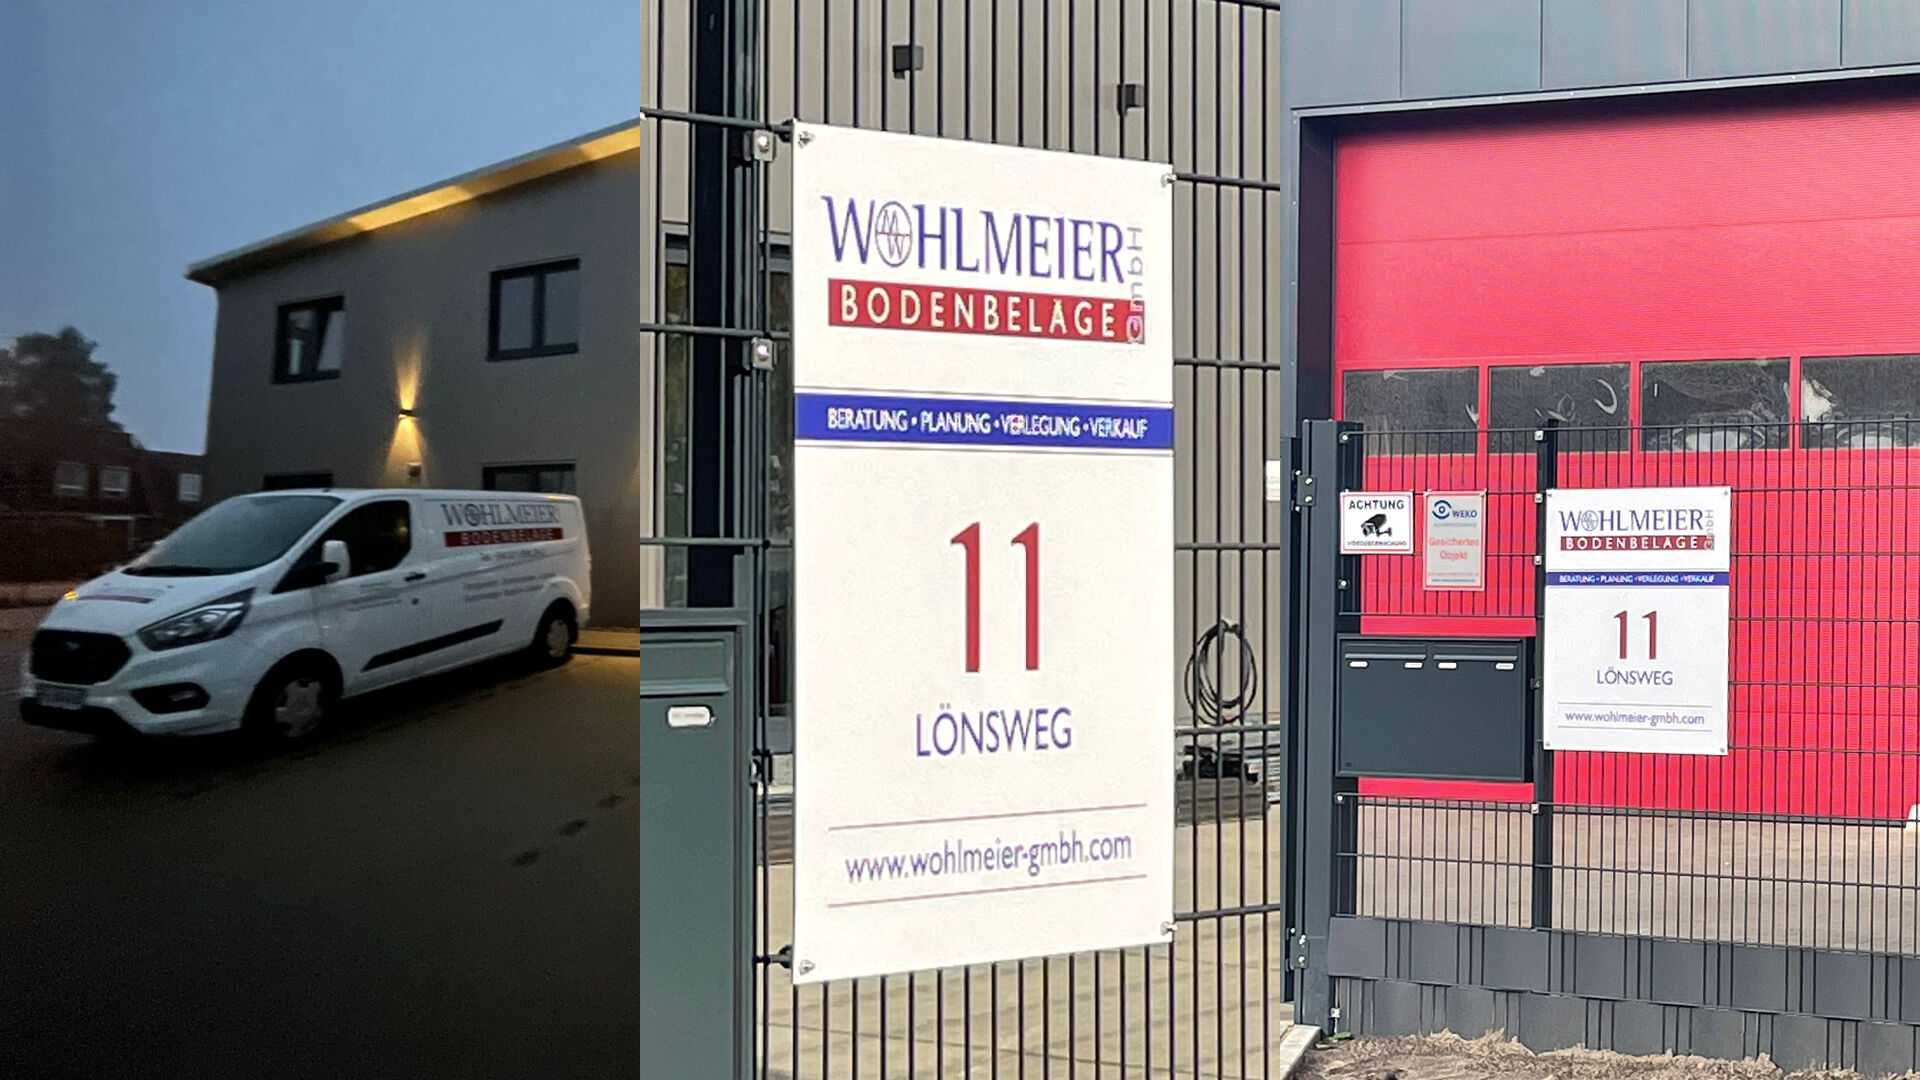 Wohlmeier GmbH